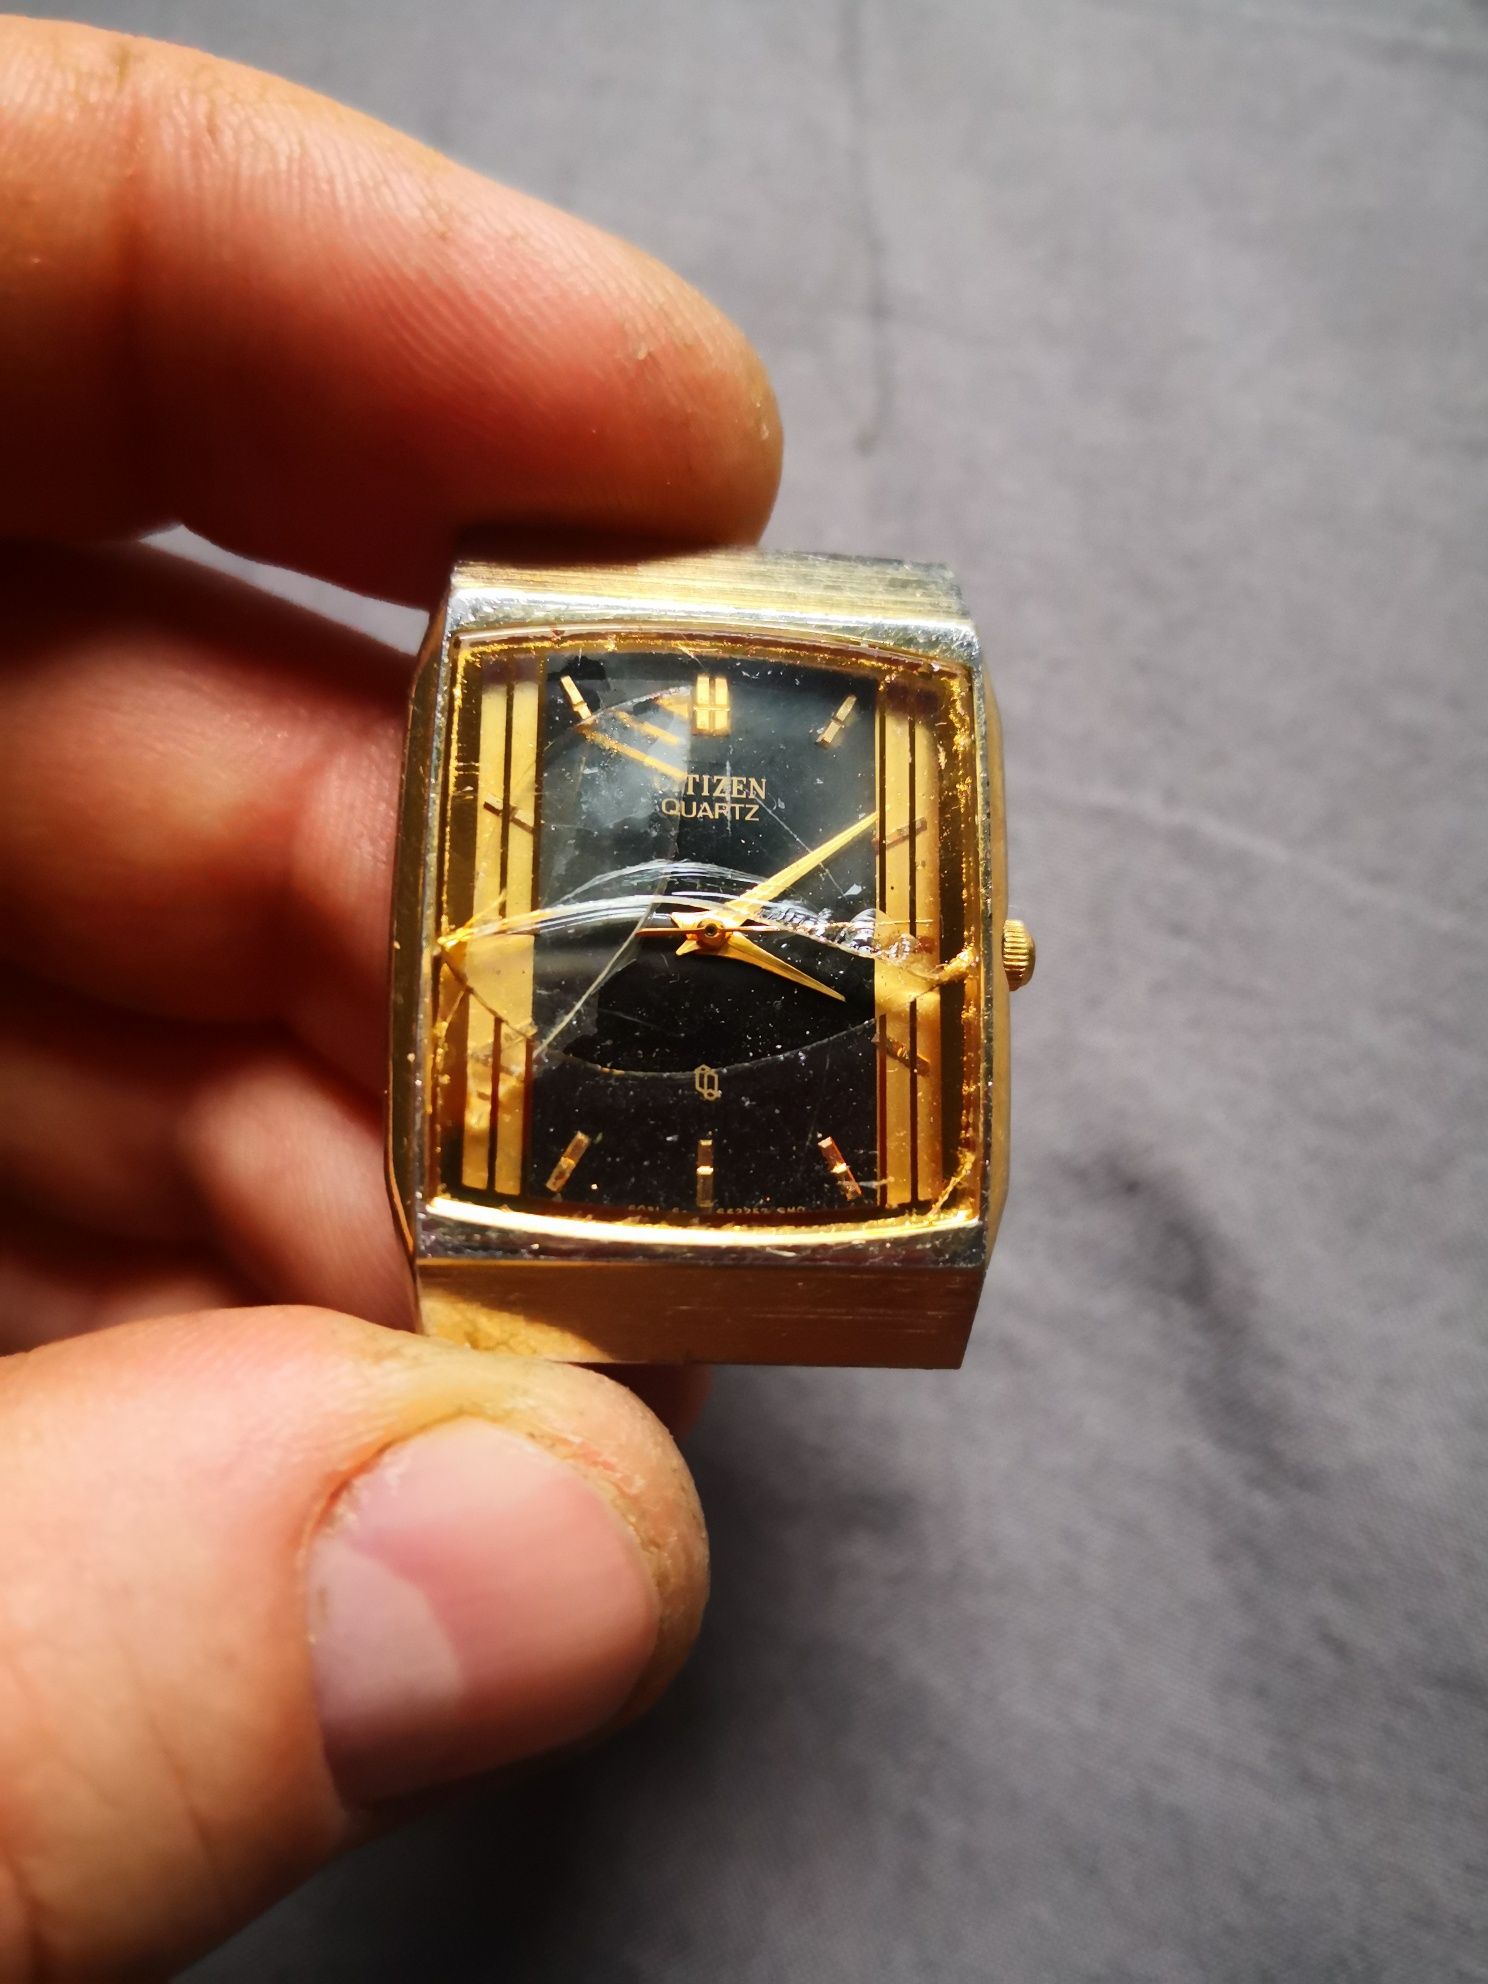 Citizen quartz pozłacany zegarek, odzysk części, starocie, kolekcja.